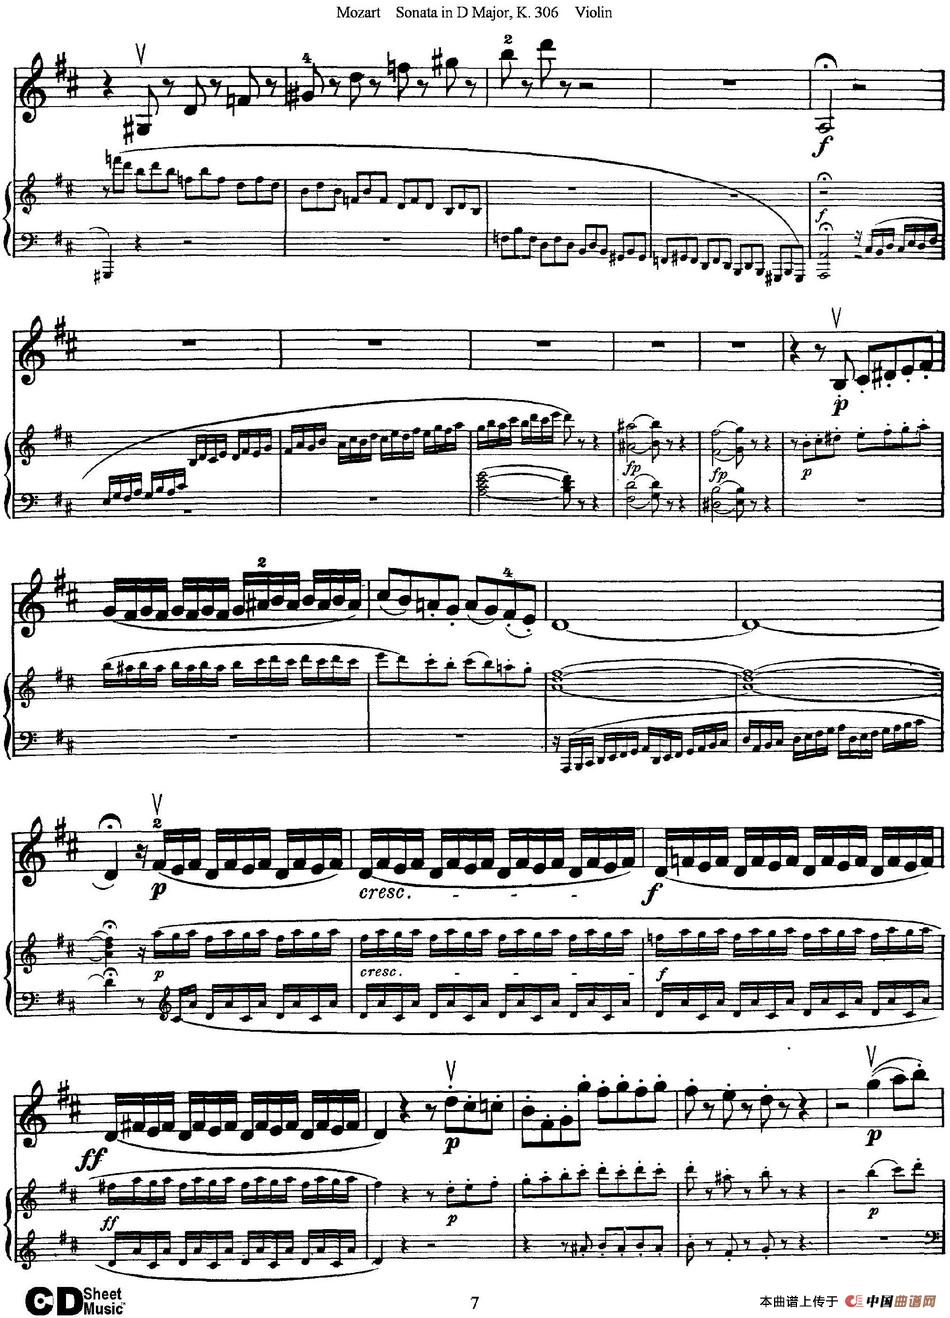 Violin Sonata in D Major K.306